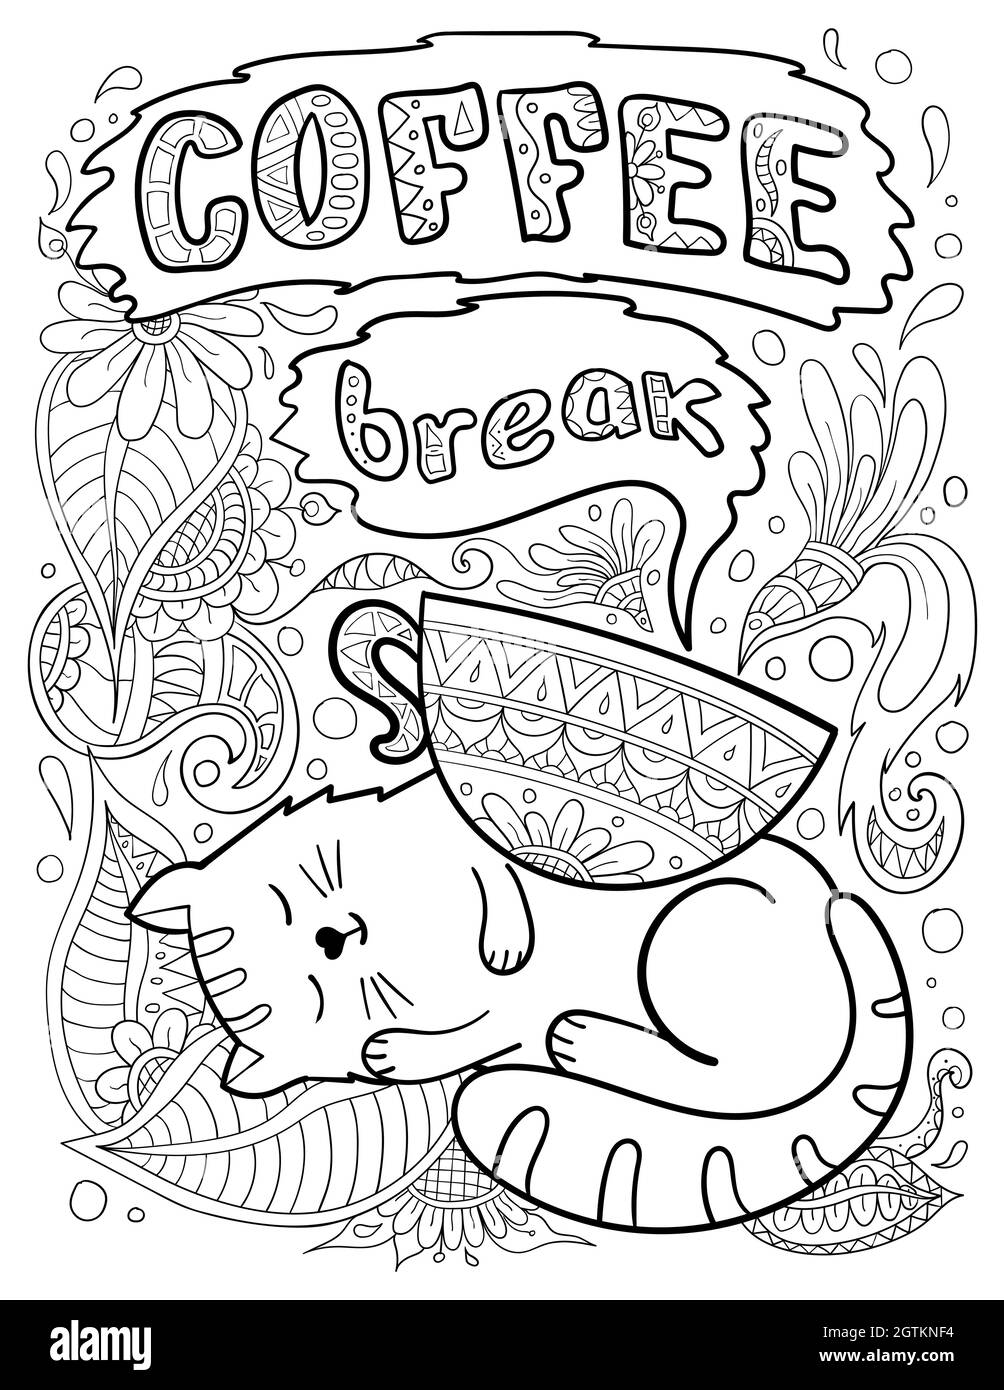 Illustration vectorielle de la page de livre de coloriage avec décoration florale, chat endormi, tasse de café et citation « pause café ». Taille 8,5x11 pouces Illustration de Vecteur